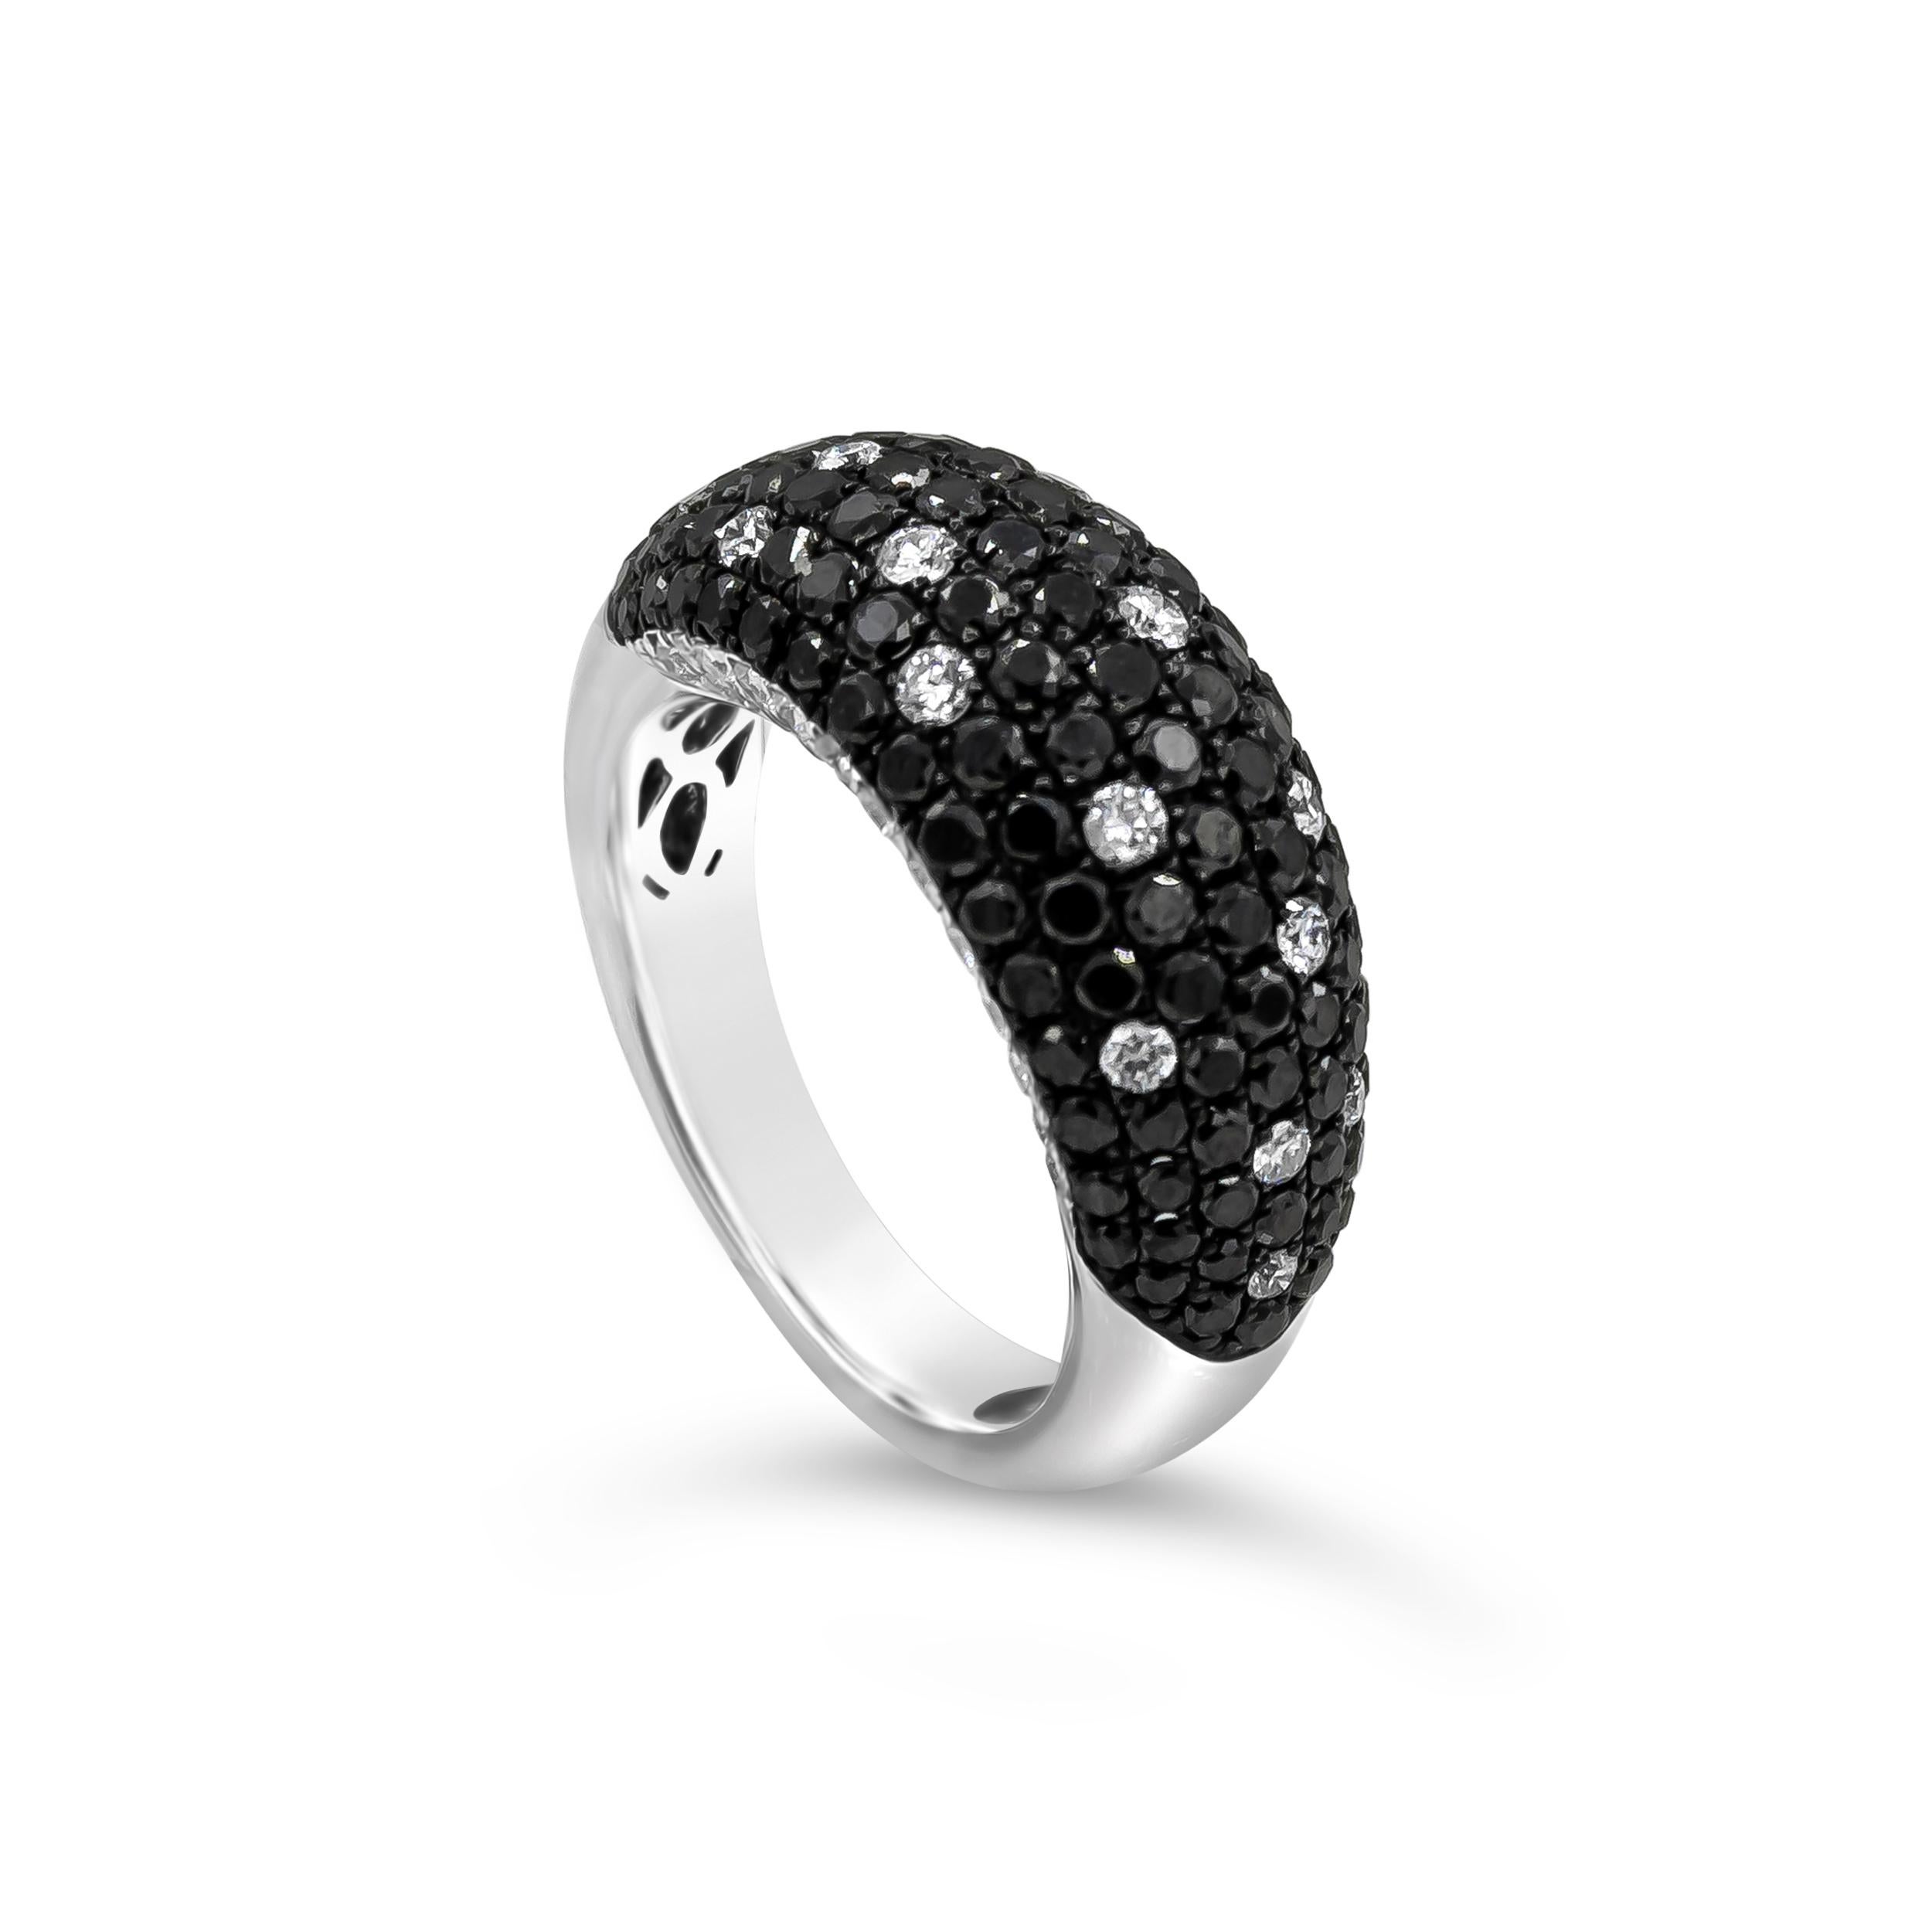 Ein exquisiter und stilvoller Ring mit schwarzen Diamanten und weißen Diamanten als Akzente in einer gewölbten Fassung mit Mikropflaster. Schwarze Diamanten haben ein Gesamtgewicht von 1,68 Karat, weiße Diamanten von 0,67 Karat. Fein gemacht in 18K